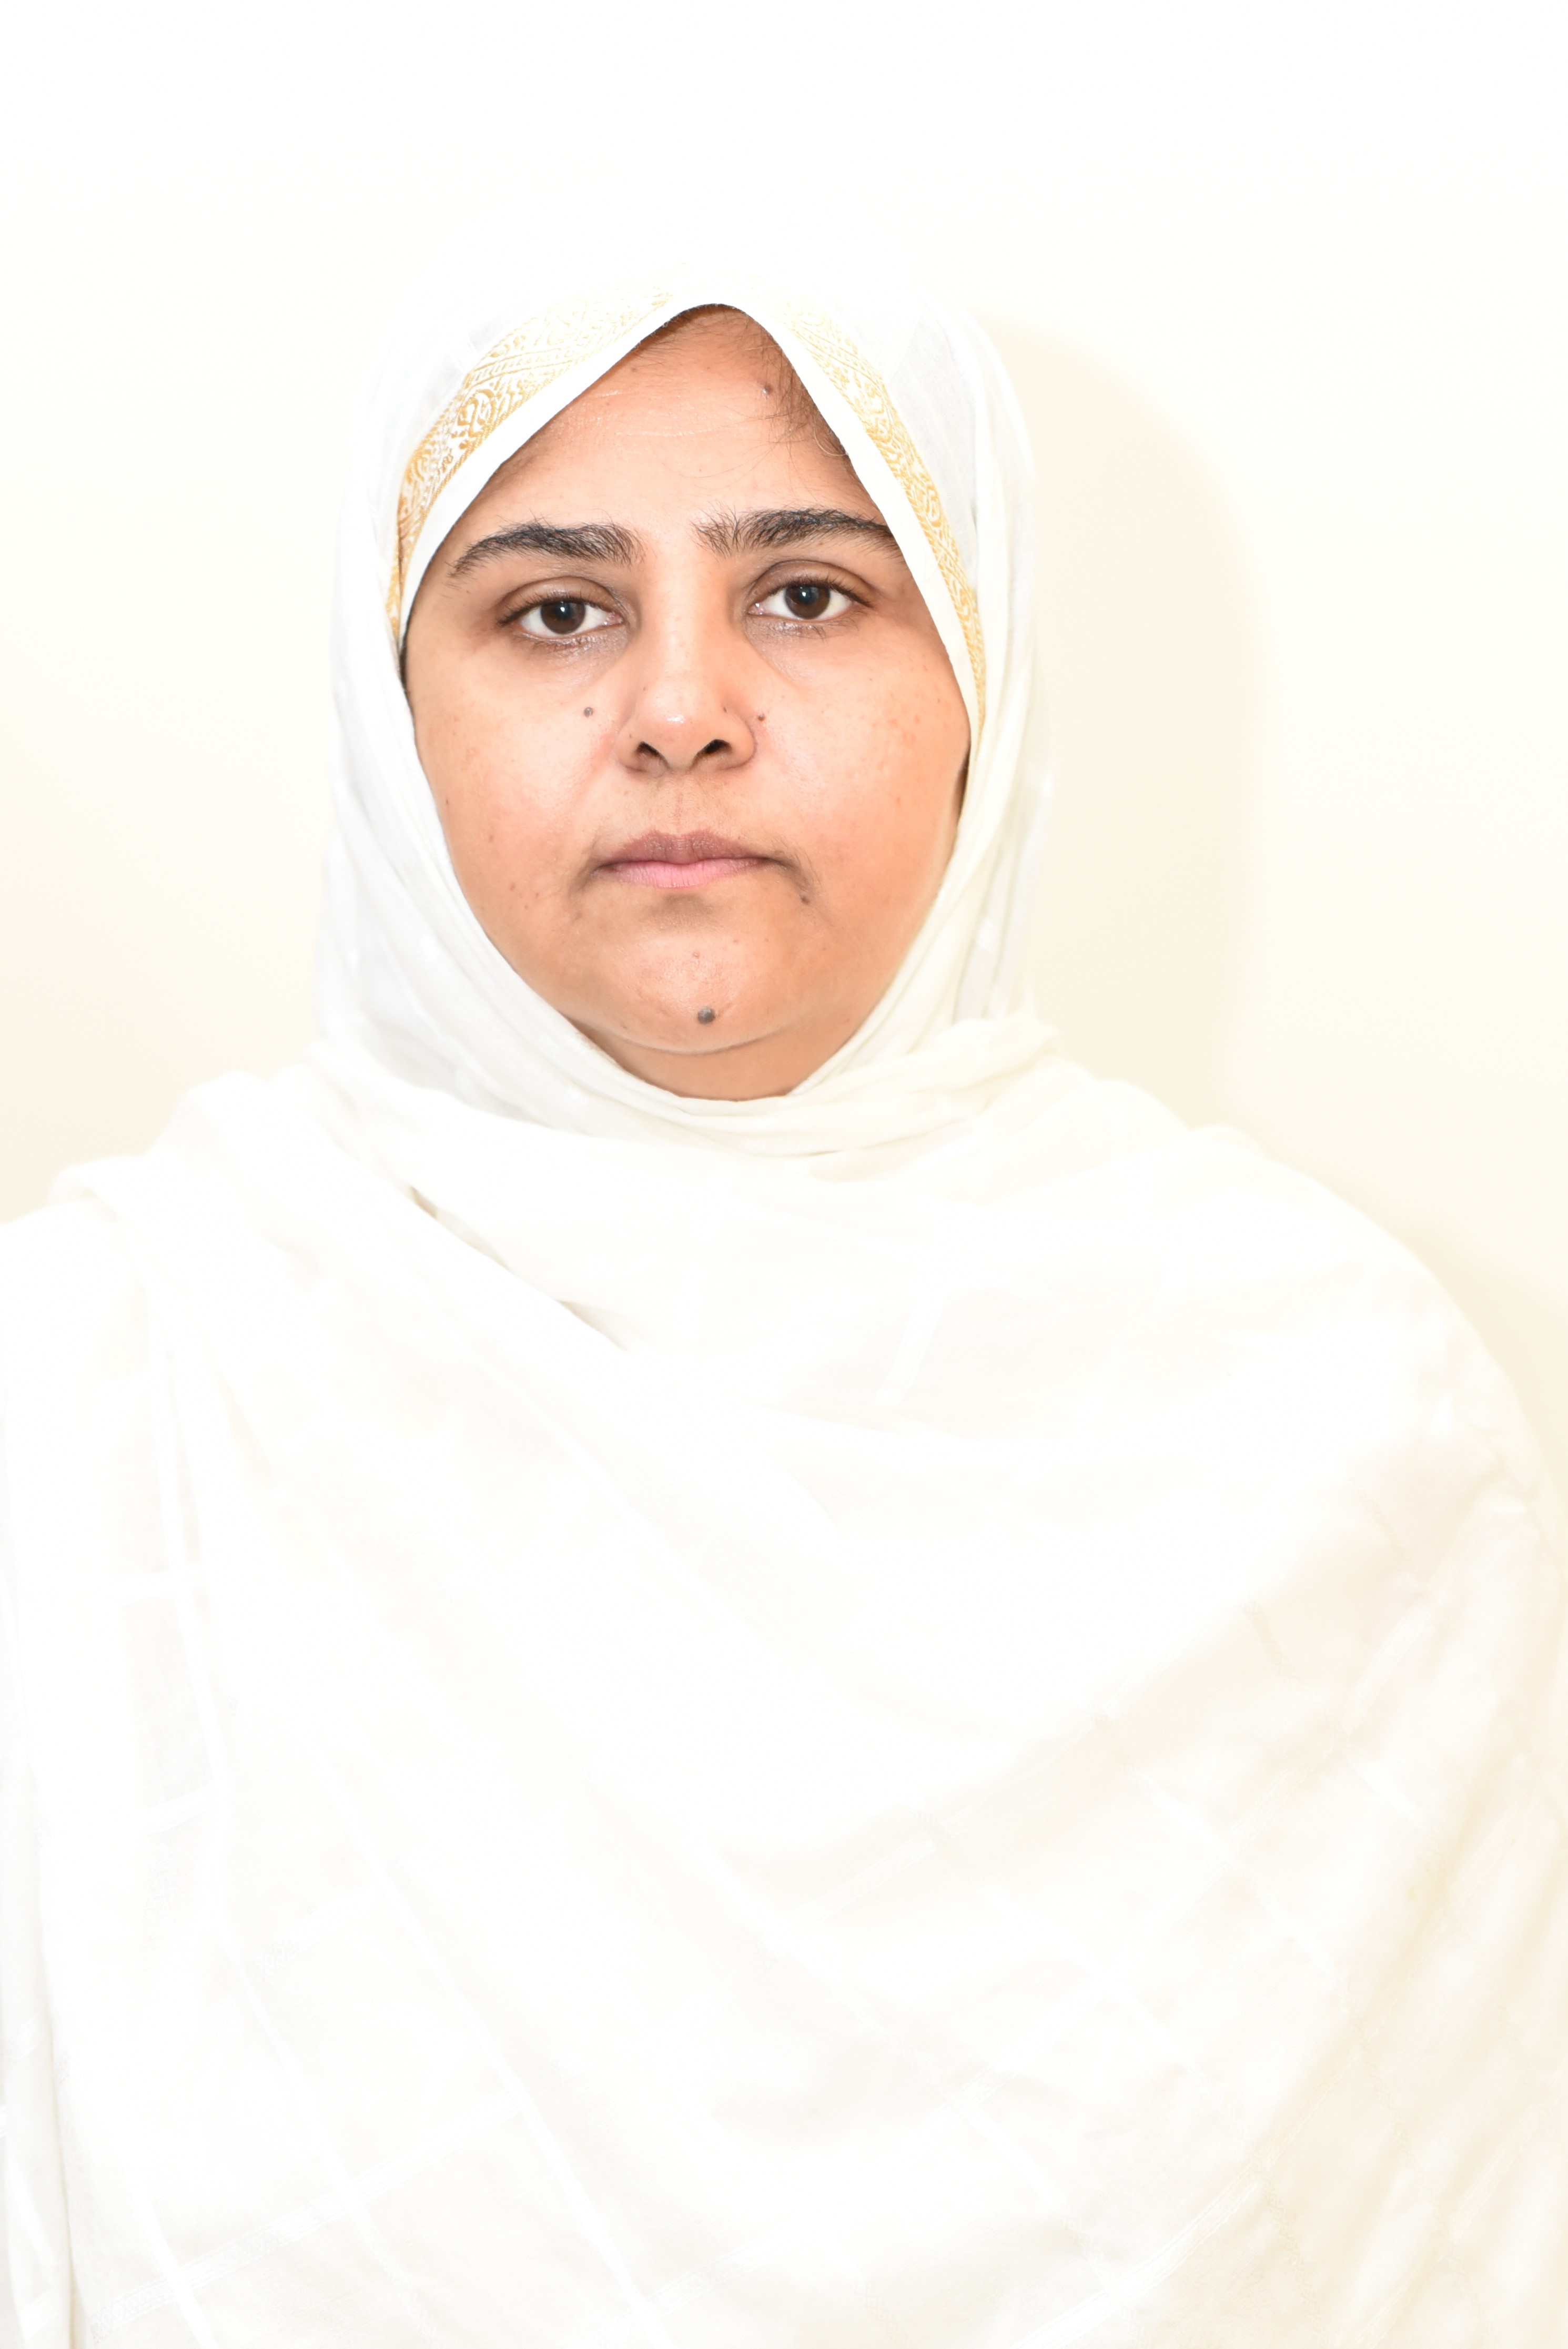 Dr. Shehla Akhtar